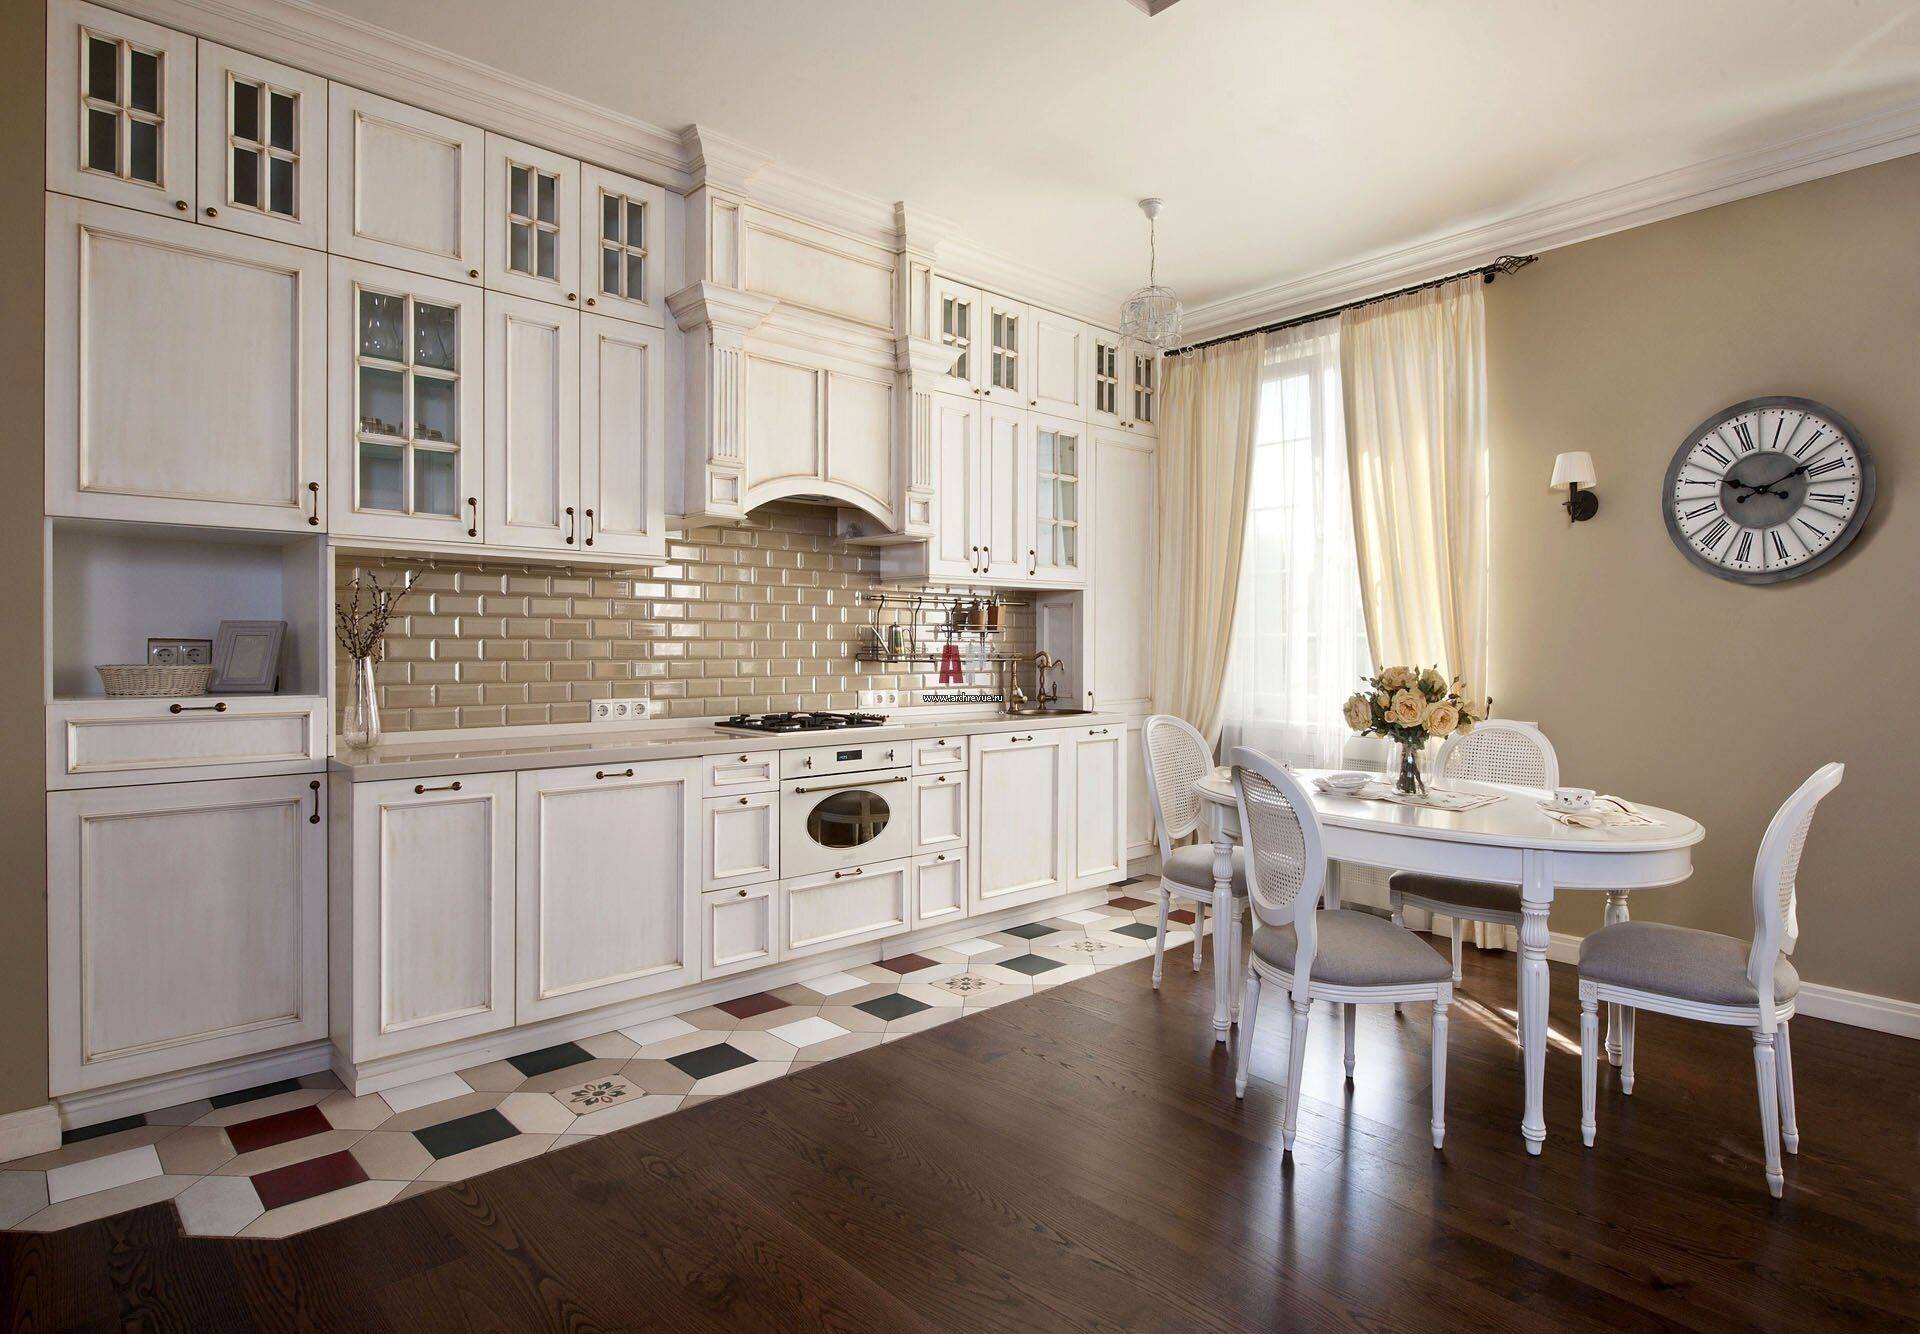 Кухня в итальянском стиле: дизайн, отделка и меблировка, фото-идеи декора